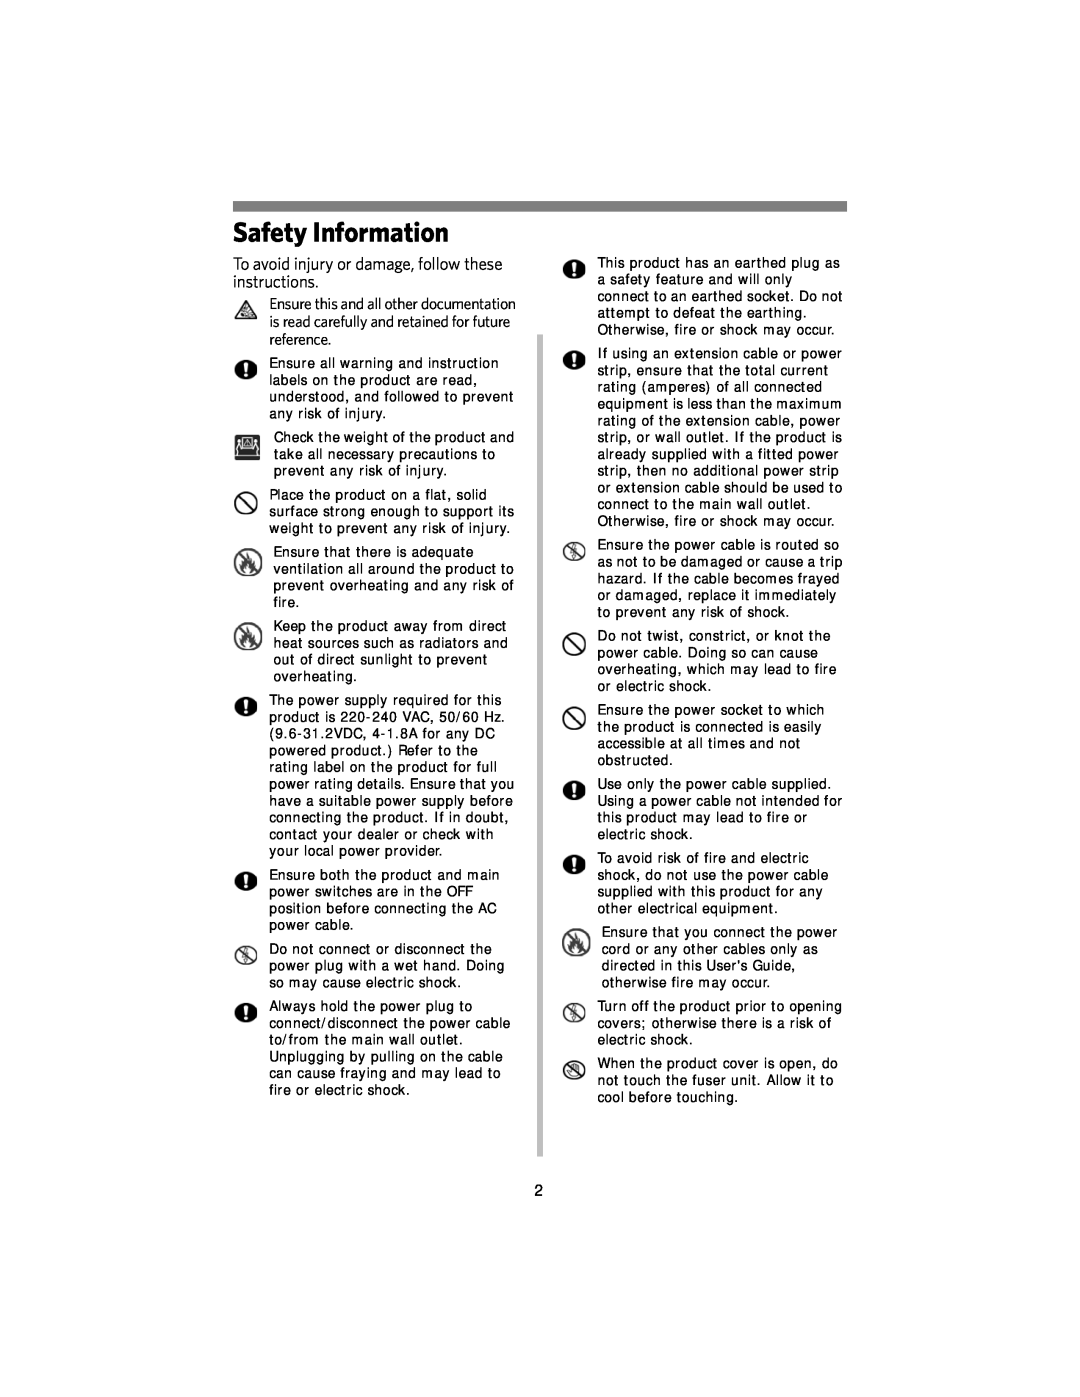 Kodak DL2100 manual Safety Information 